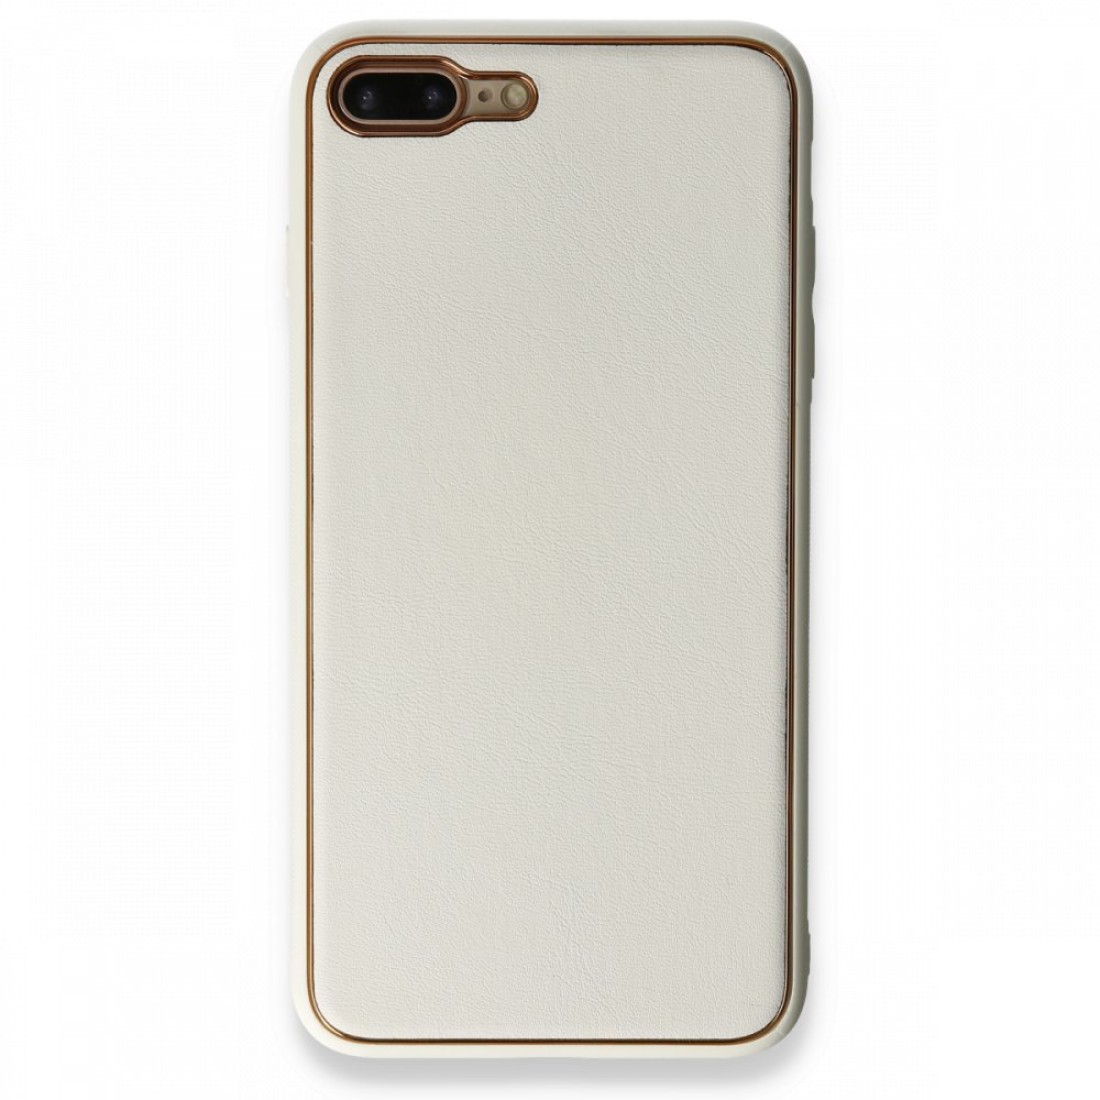 Apple iPhone 7 Plus Kılıf Coco Deri Silikon Kapak - Beyaz